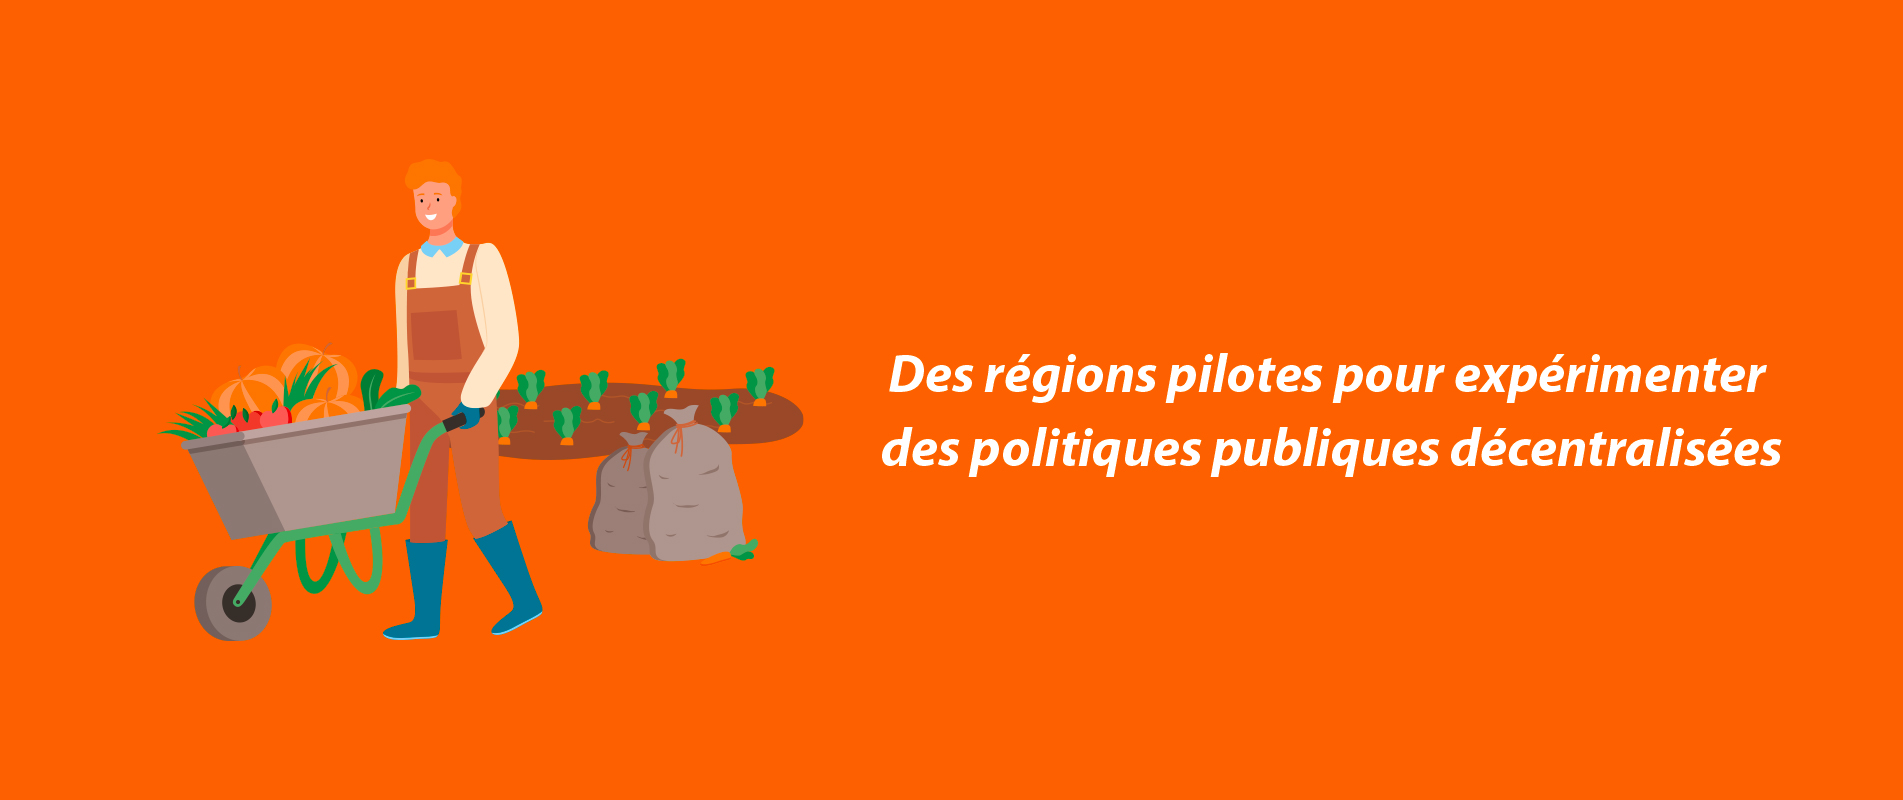 Des régions pilotes pour expérimenter des politiques publiques décentralisées